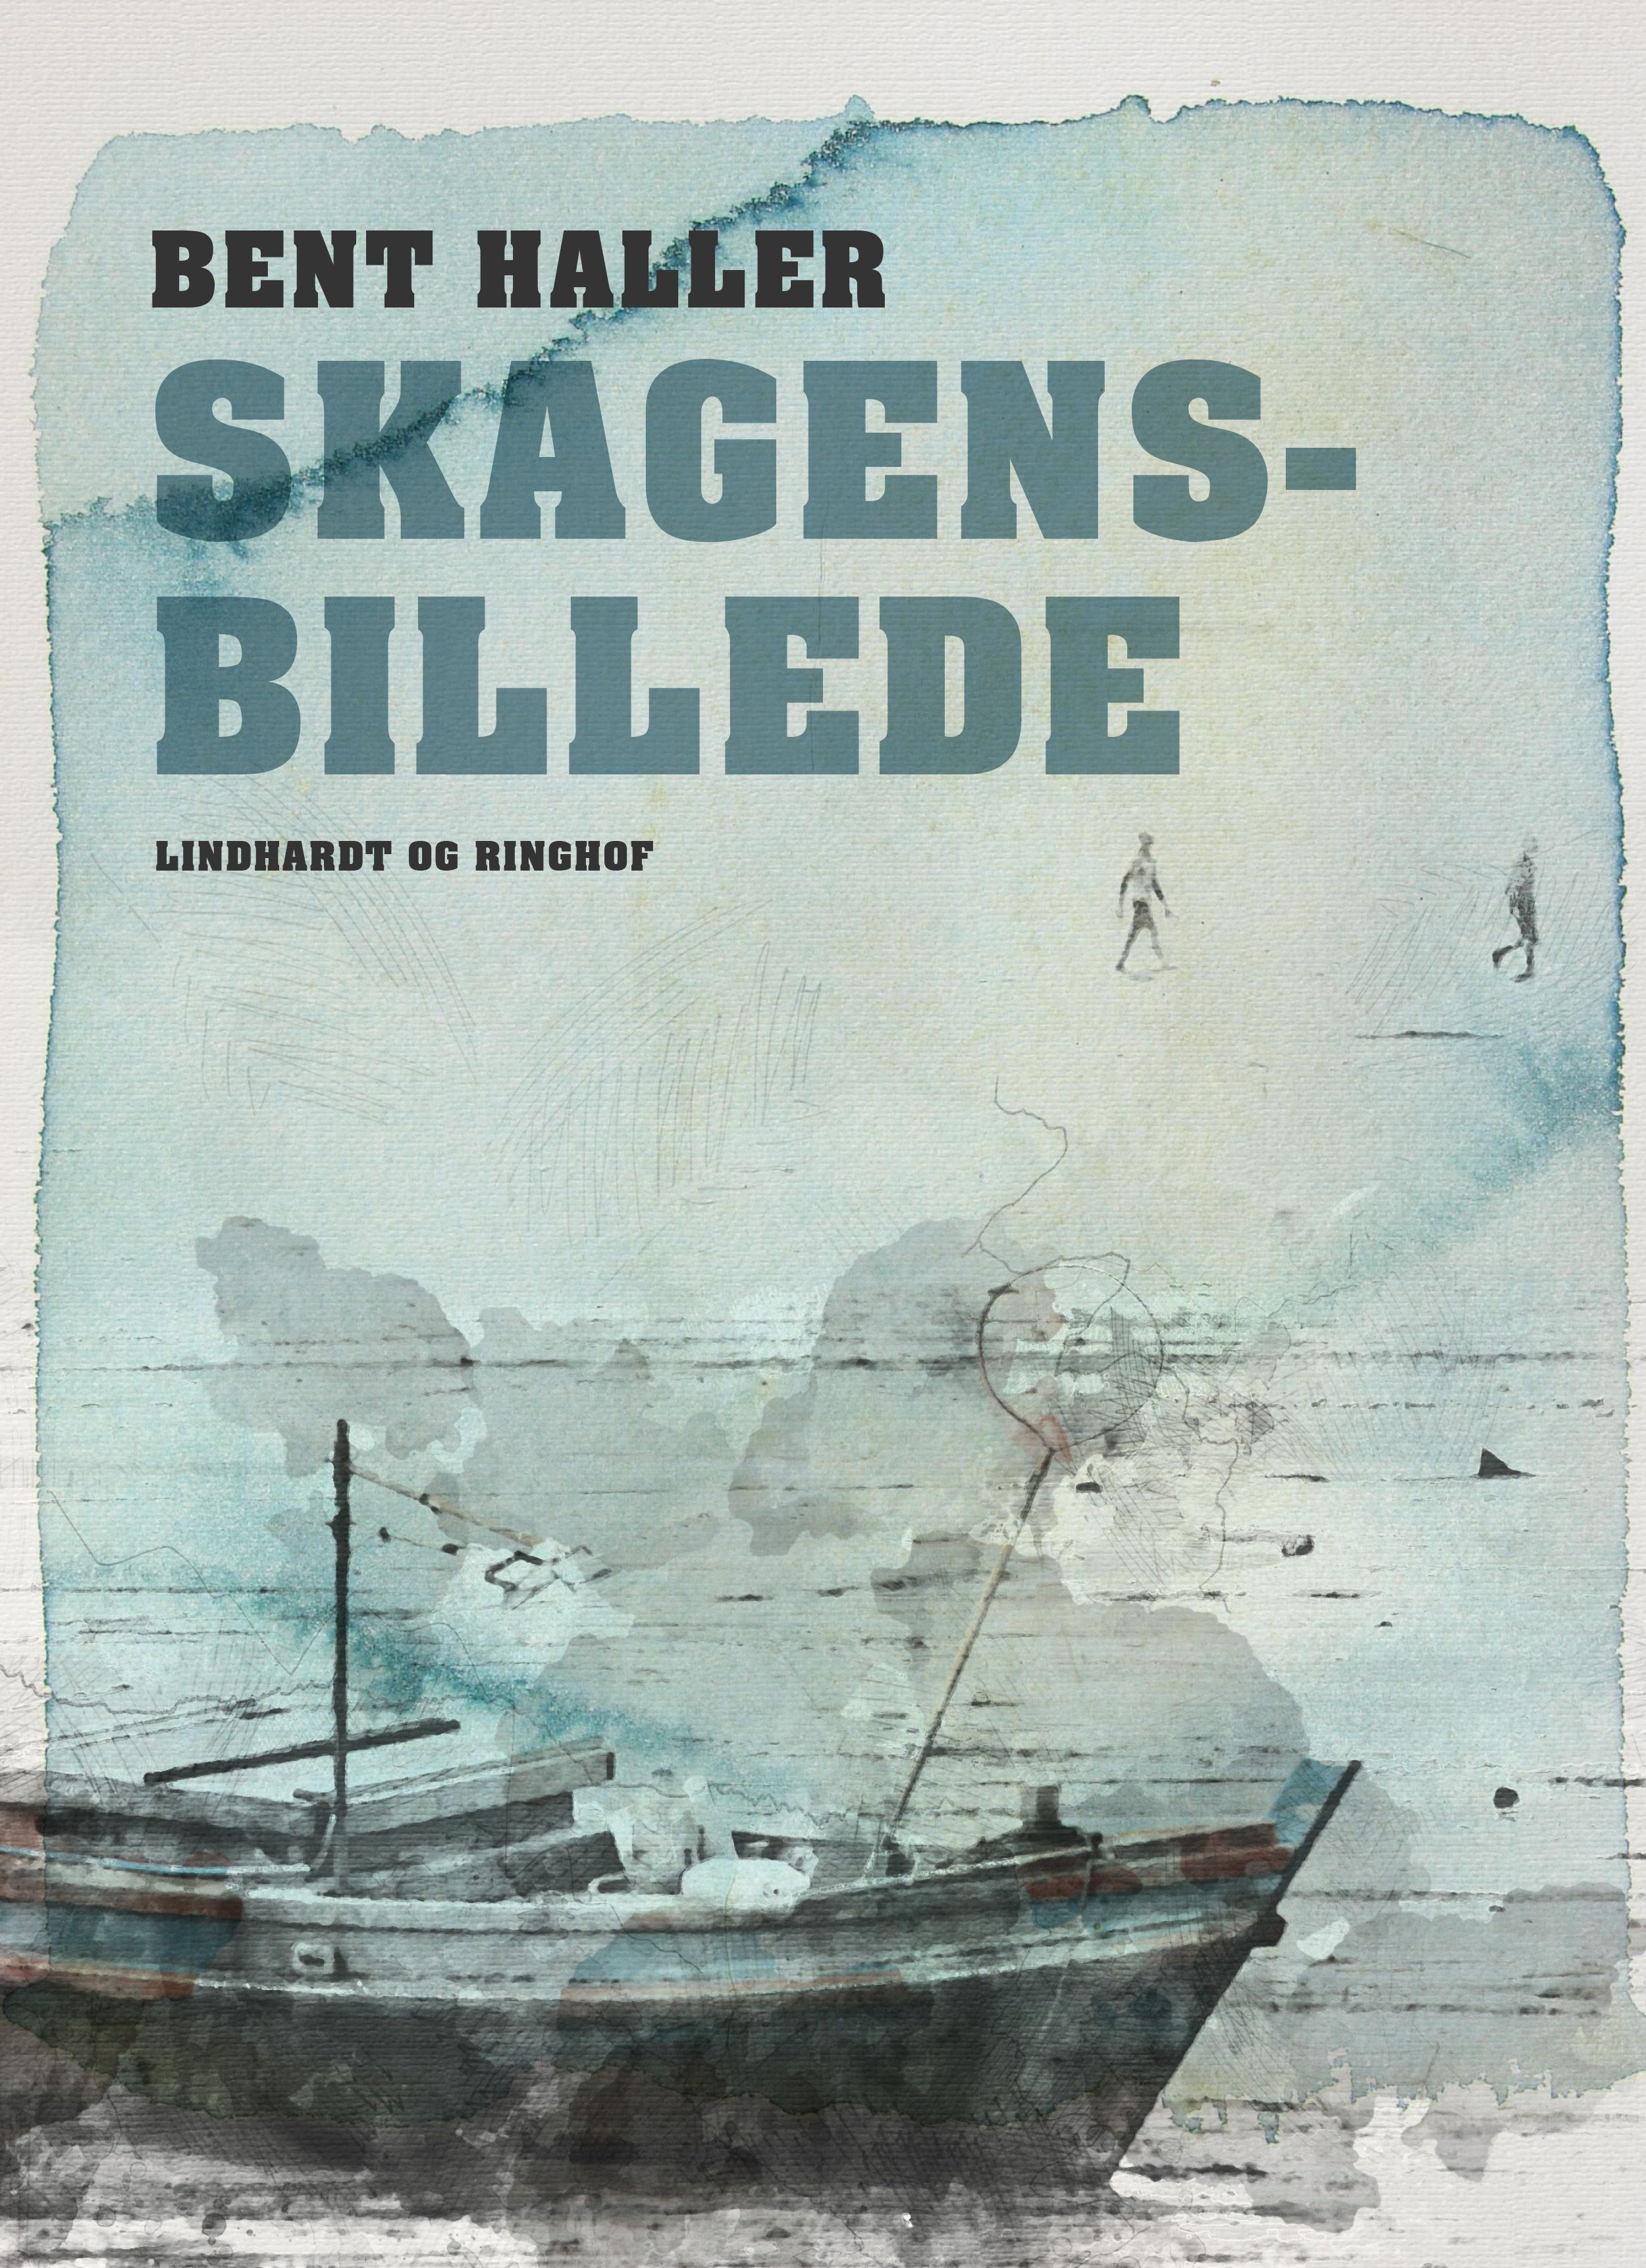 Skagensbillede, eBook by Bent Haller